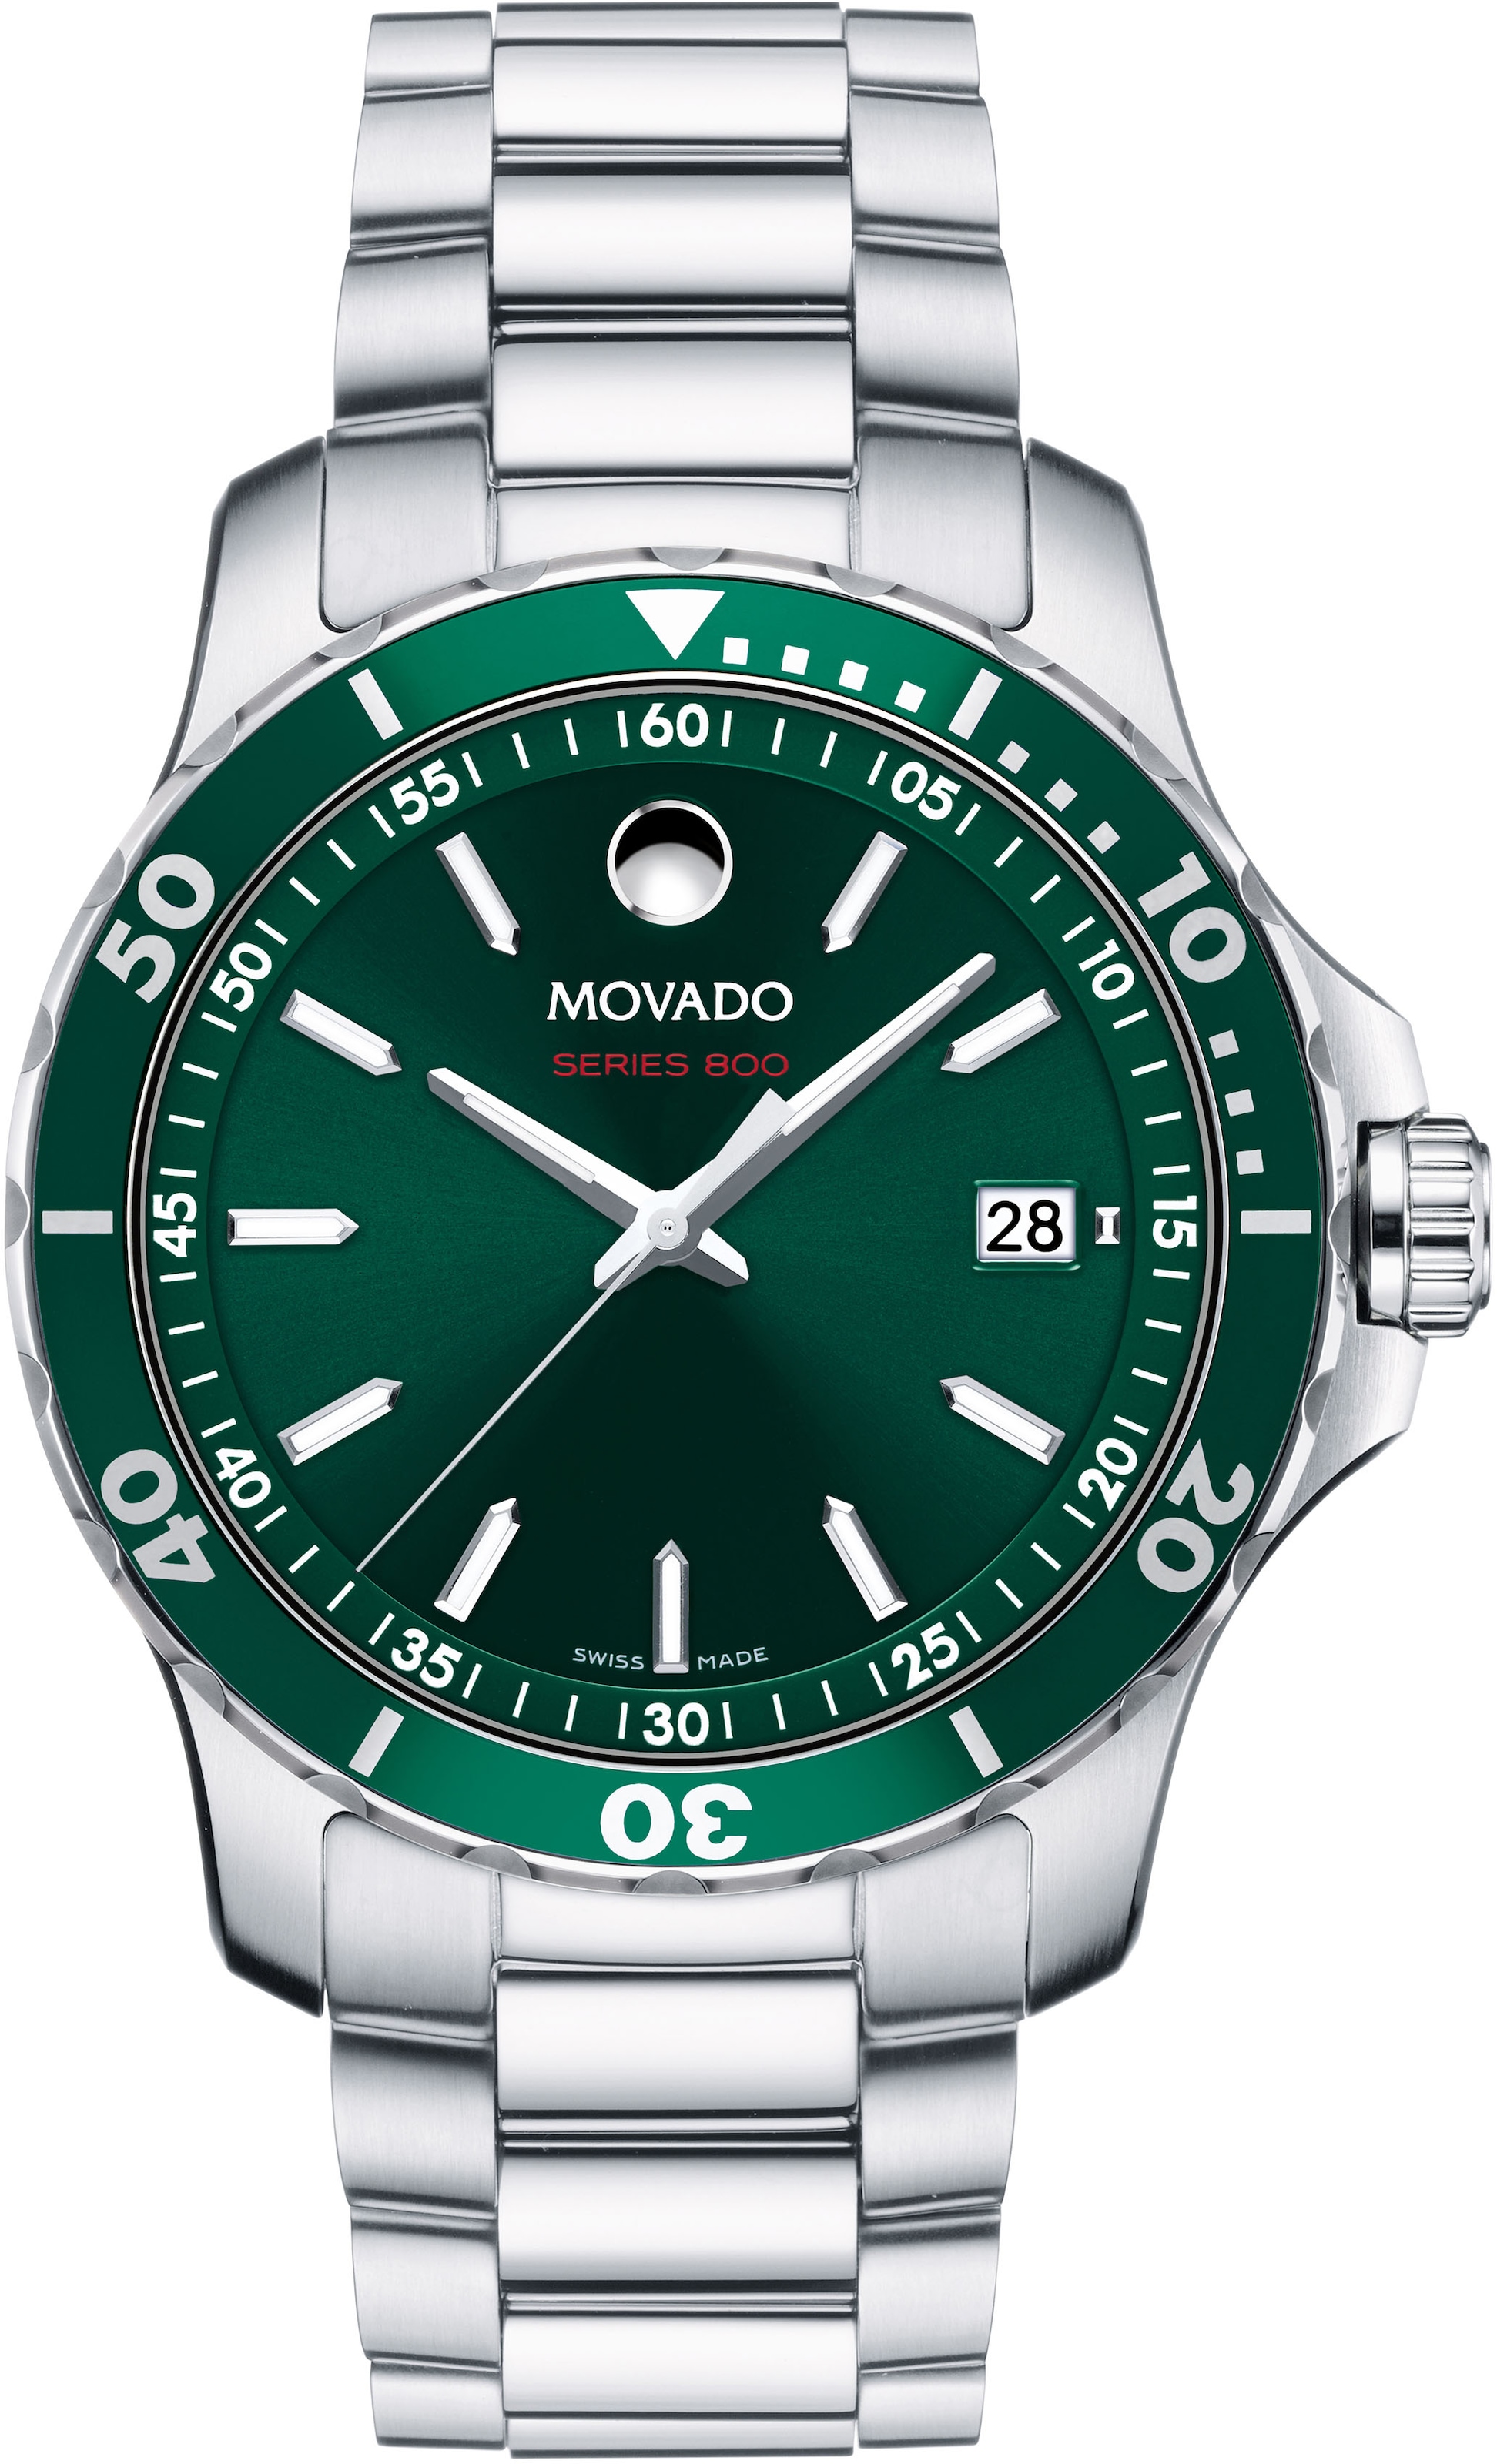 MOVADO Uhr Rechnung Schweizer »Series 800, kaufen auf 2600136«